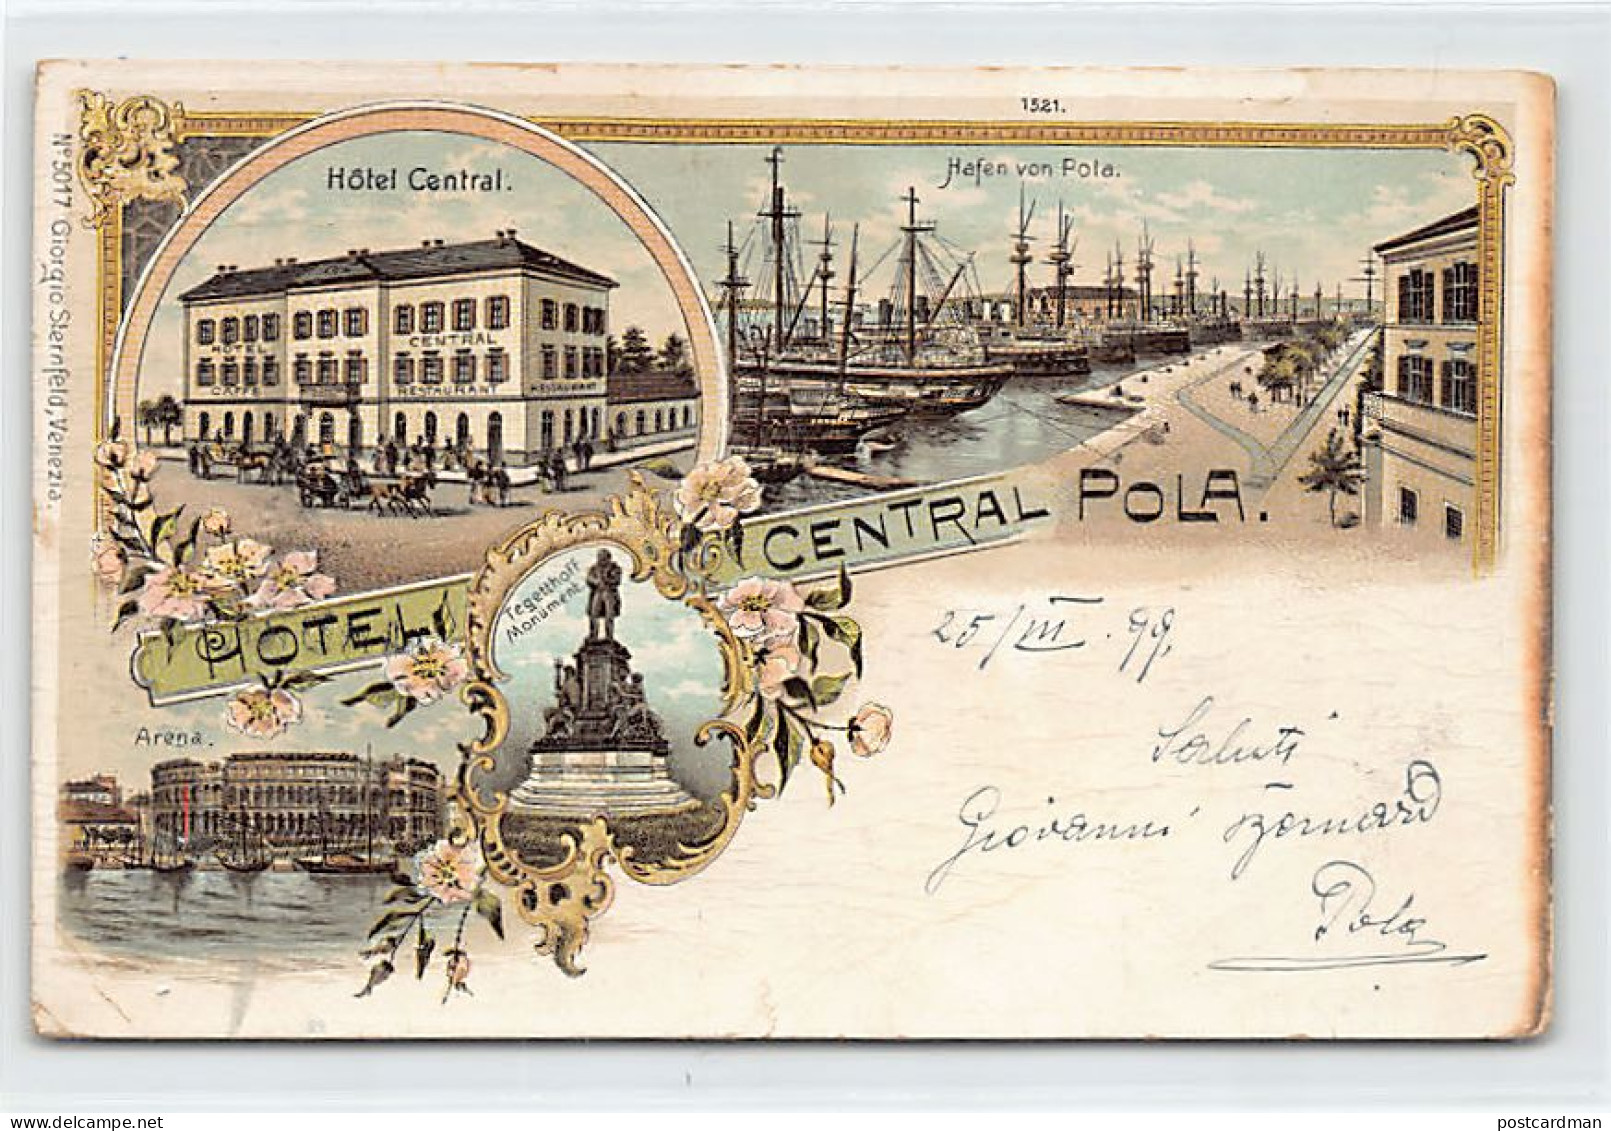 Croatia - POLA - Litho - Hotel Central - Year 1899 - Publ. Giorgio Sternfeld - Croatia